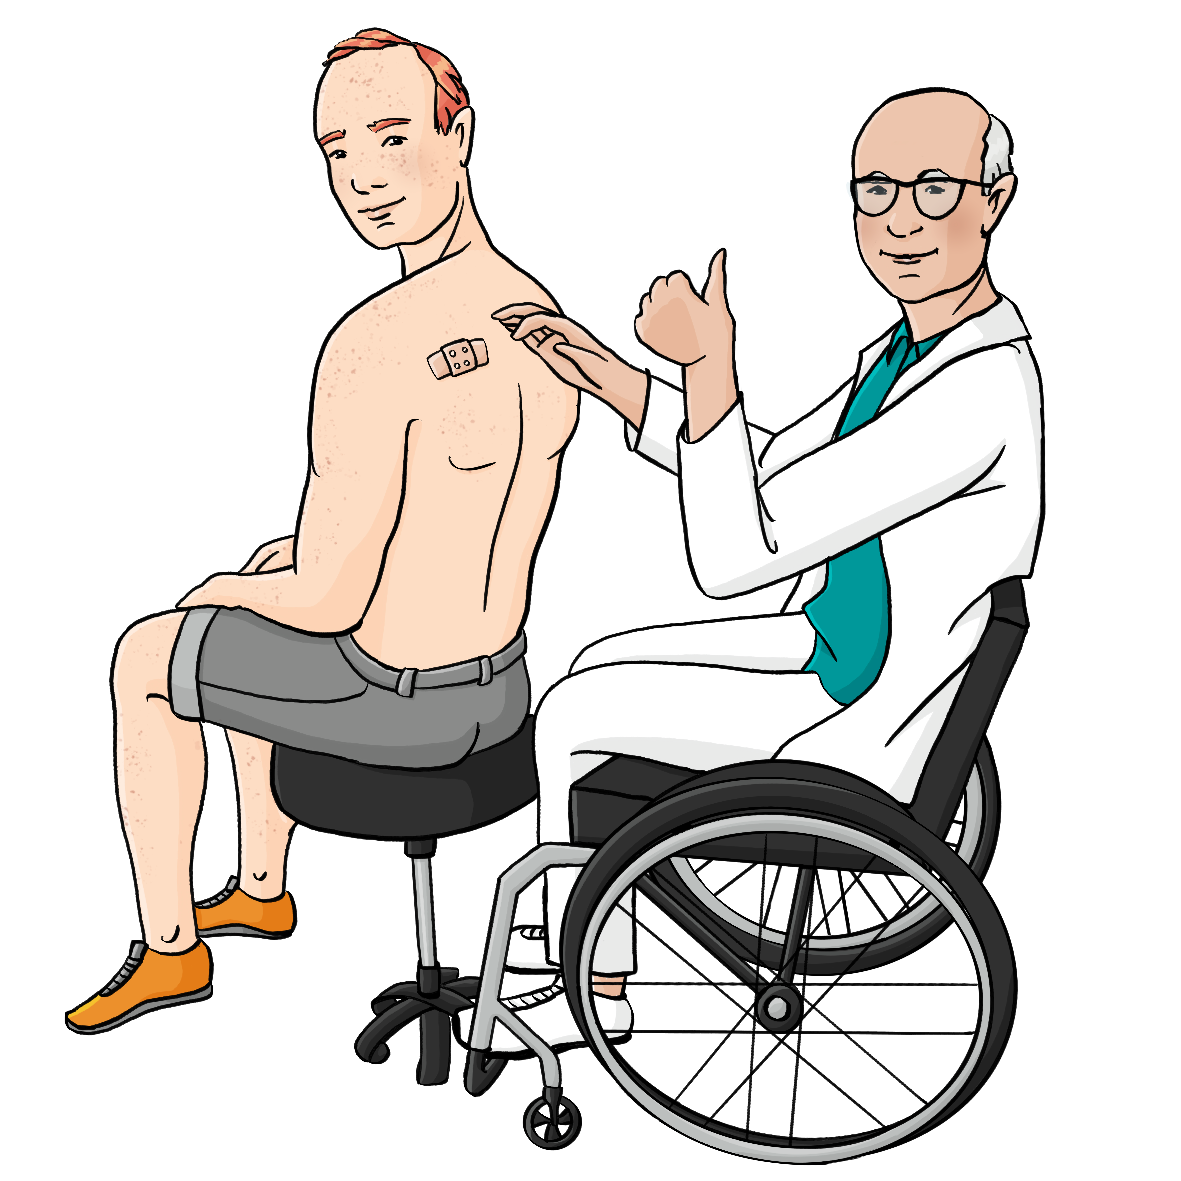 Ein Mann mit freiem Oberkörper sitzt auf einem Hocker. Ein älterer Mann mit weißem Kittel, weißer Hose und Rollstuhl klebt ihm ein Pflaster auf den Rücken. Er streckt den Daumen nach oben. 